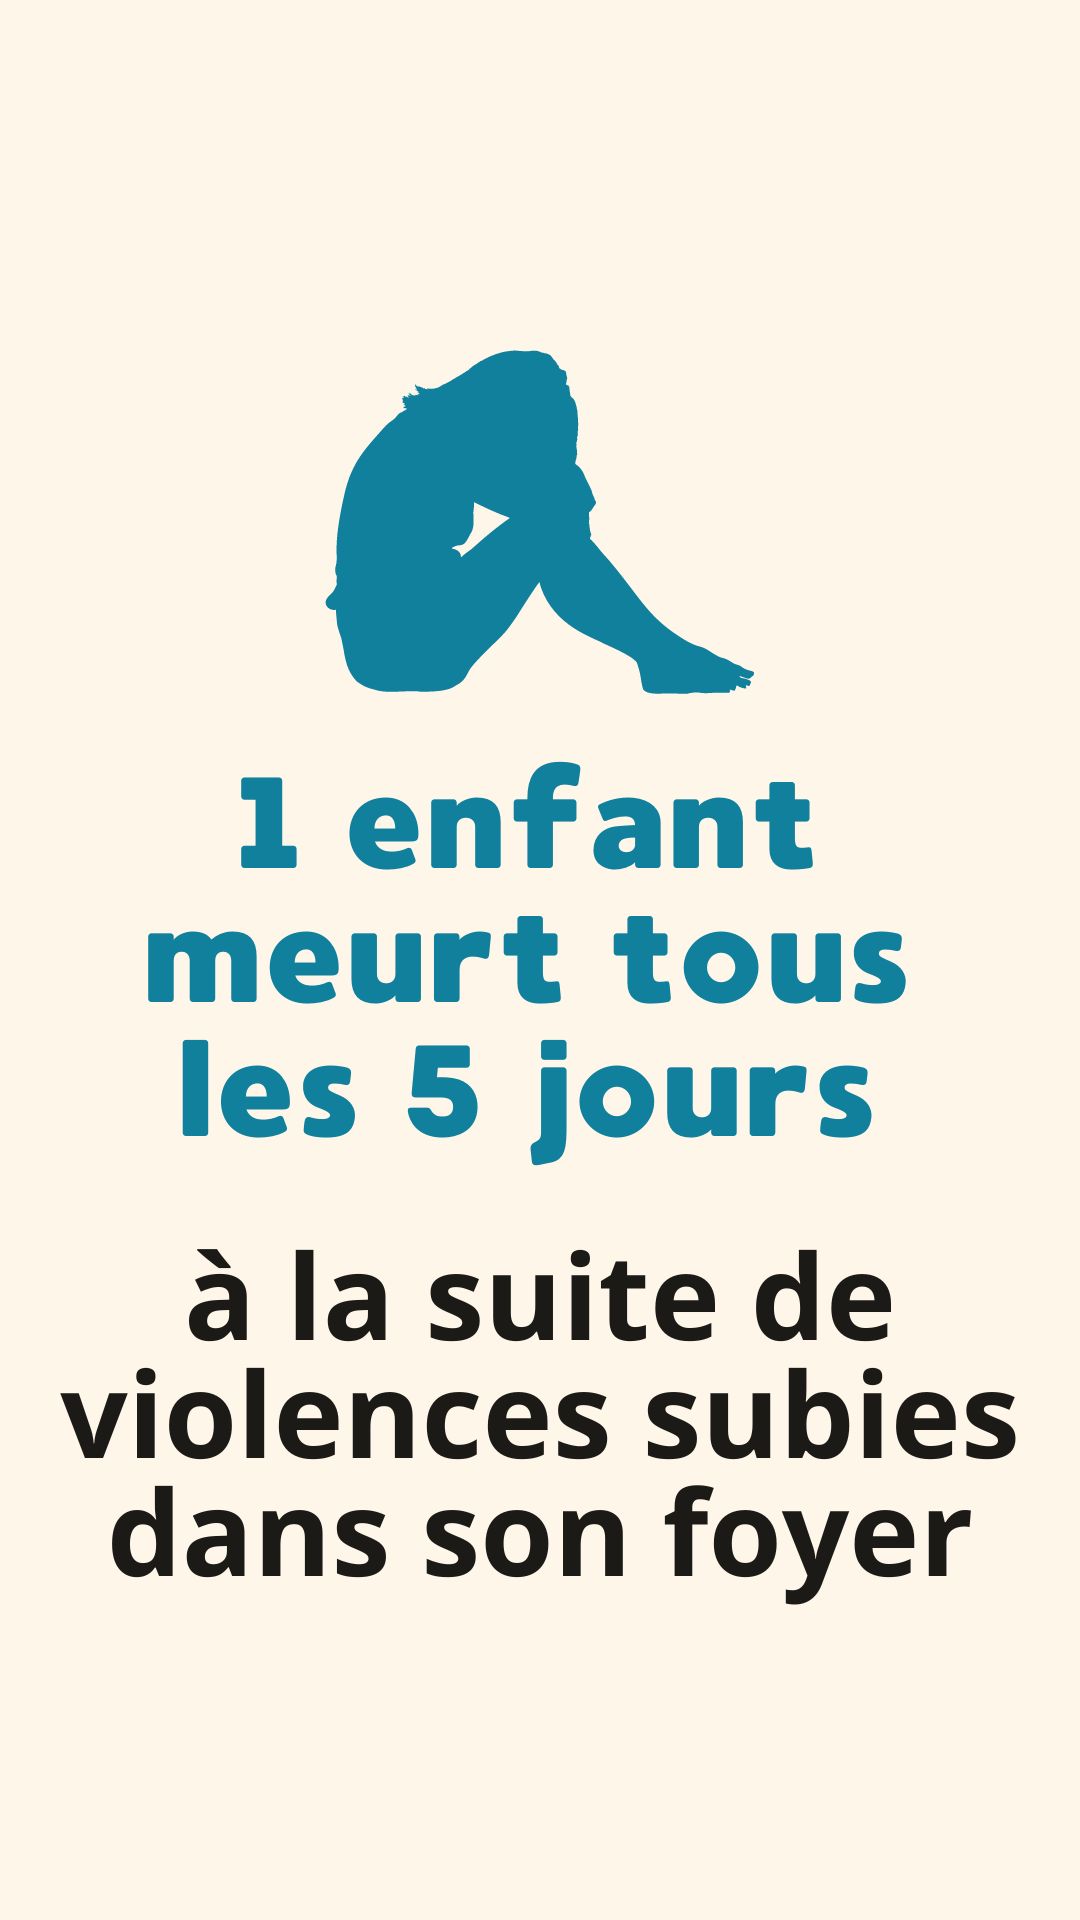 50 000 enfants et adolescents sont victimes de violences en France chaque année